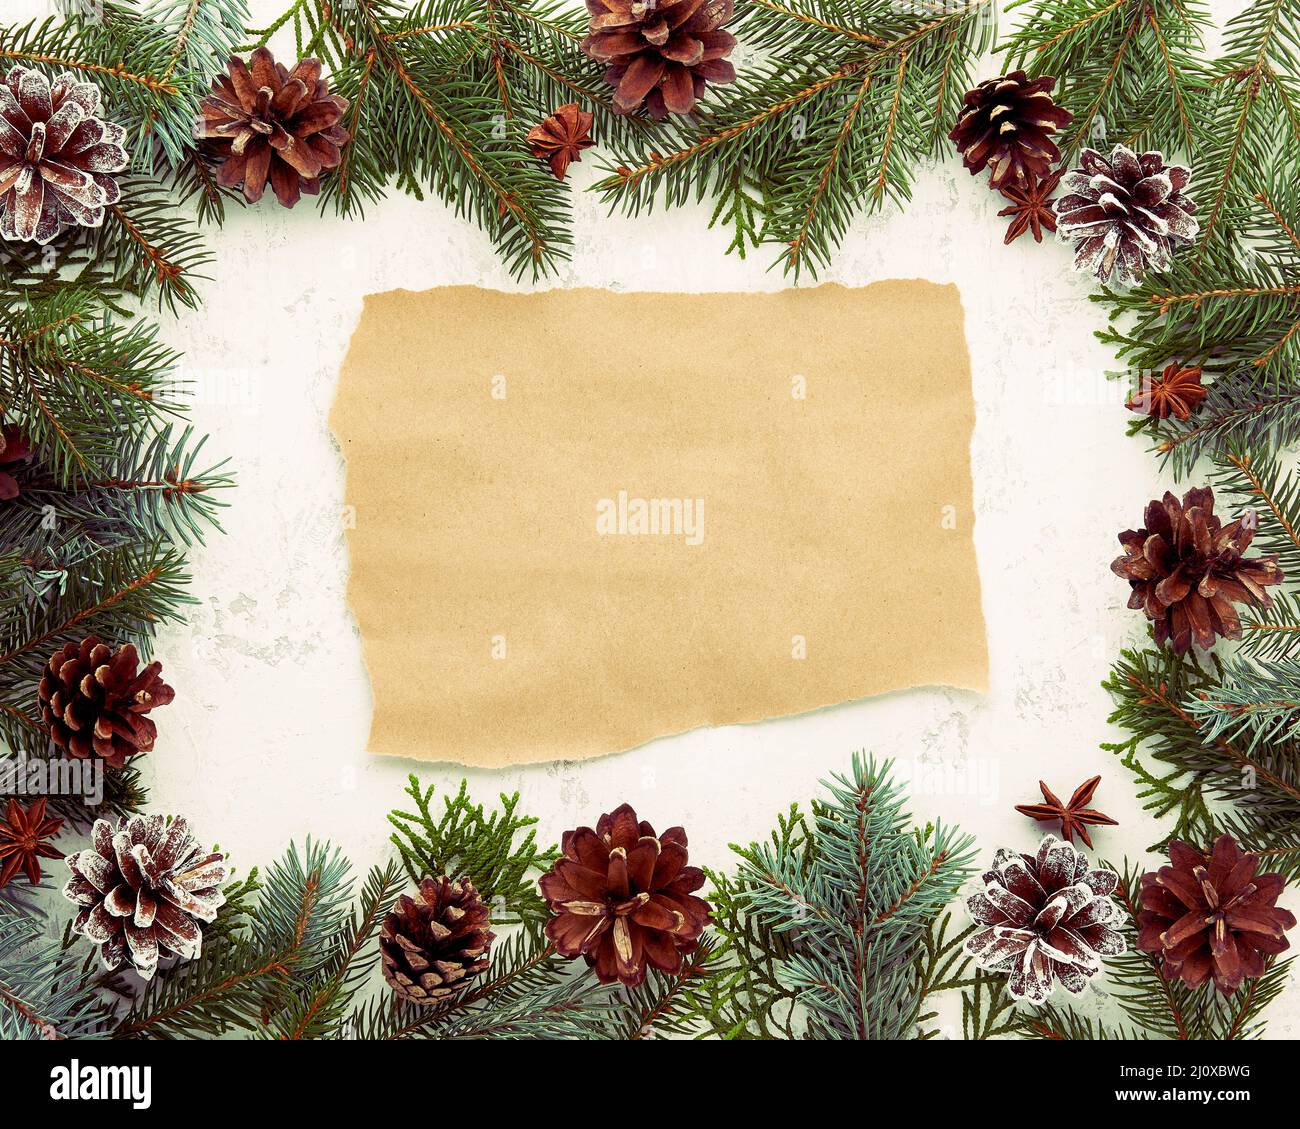 Noël et bonne année fond blanc avec papier artisanal pour le texte. Cadre pour la recette Banque D'Images